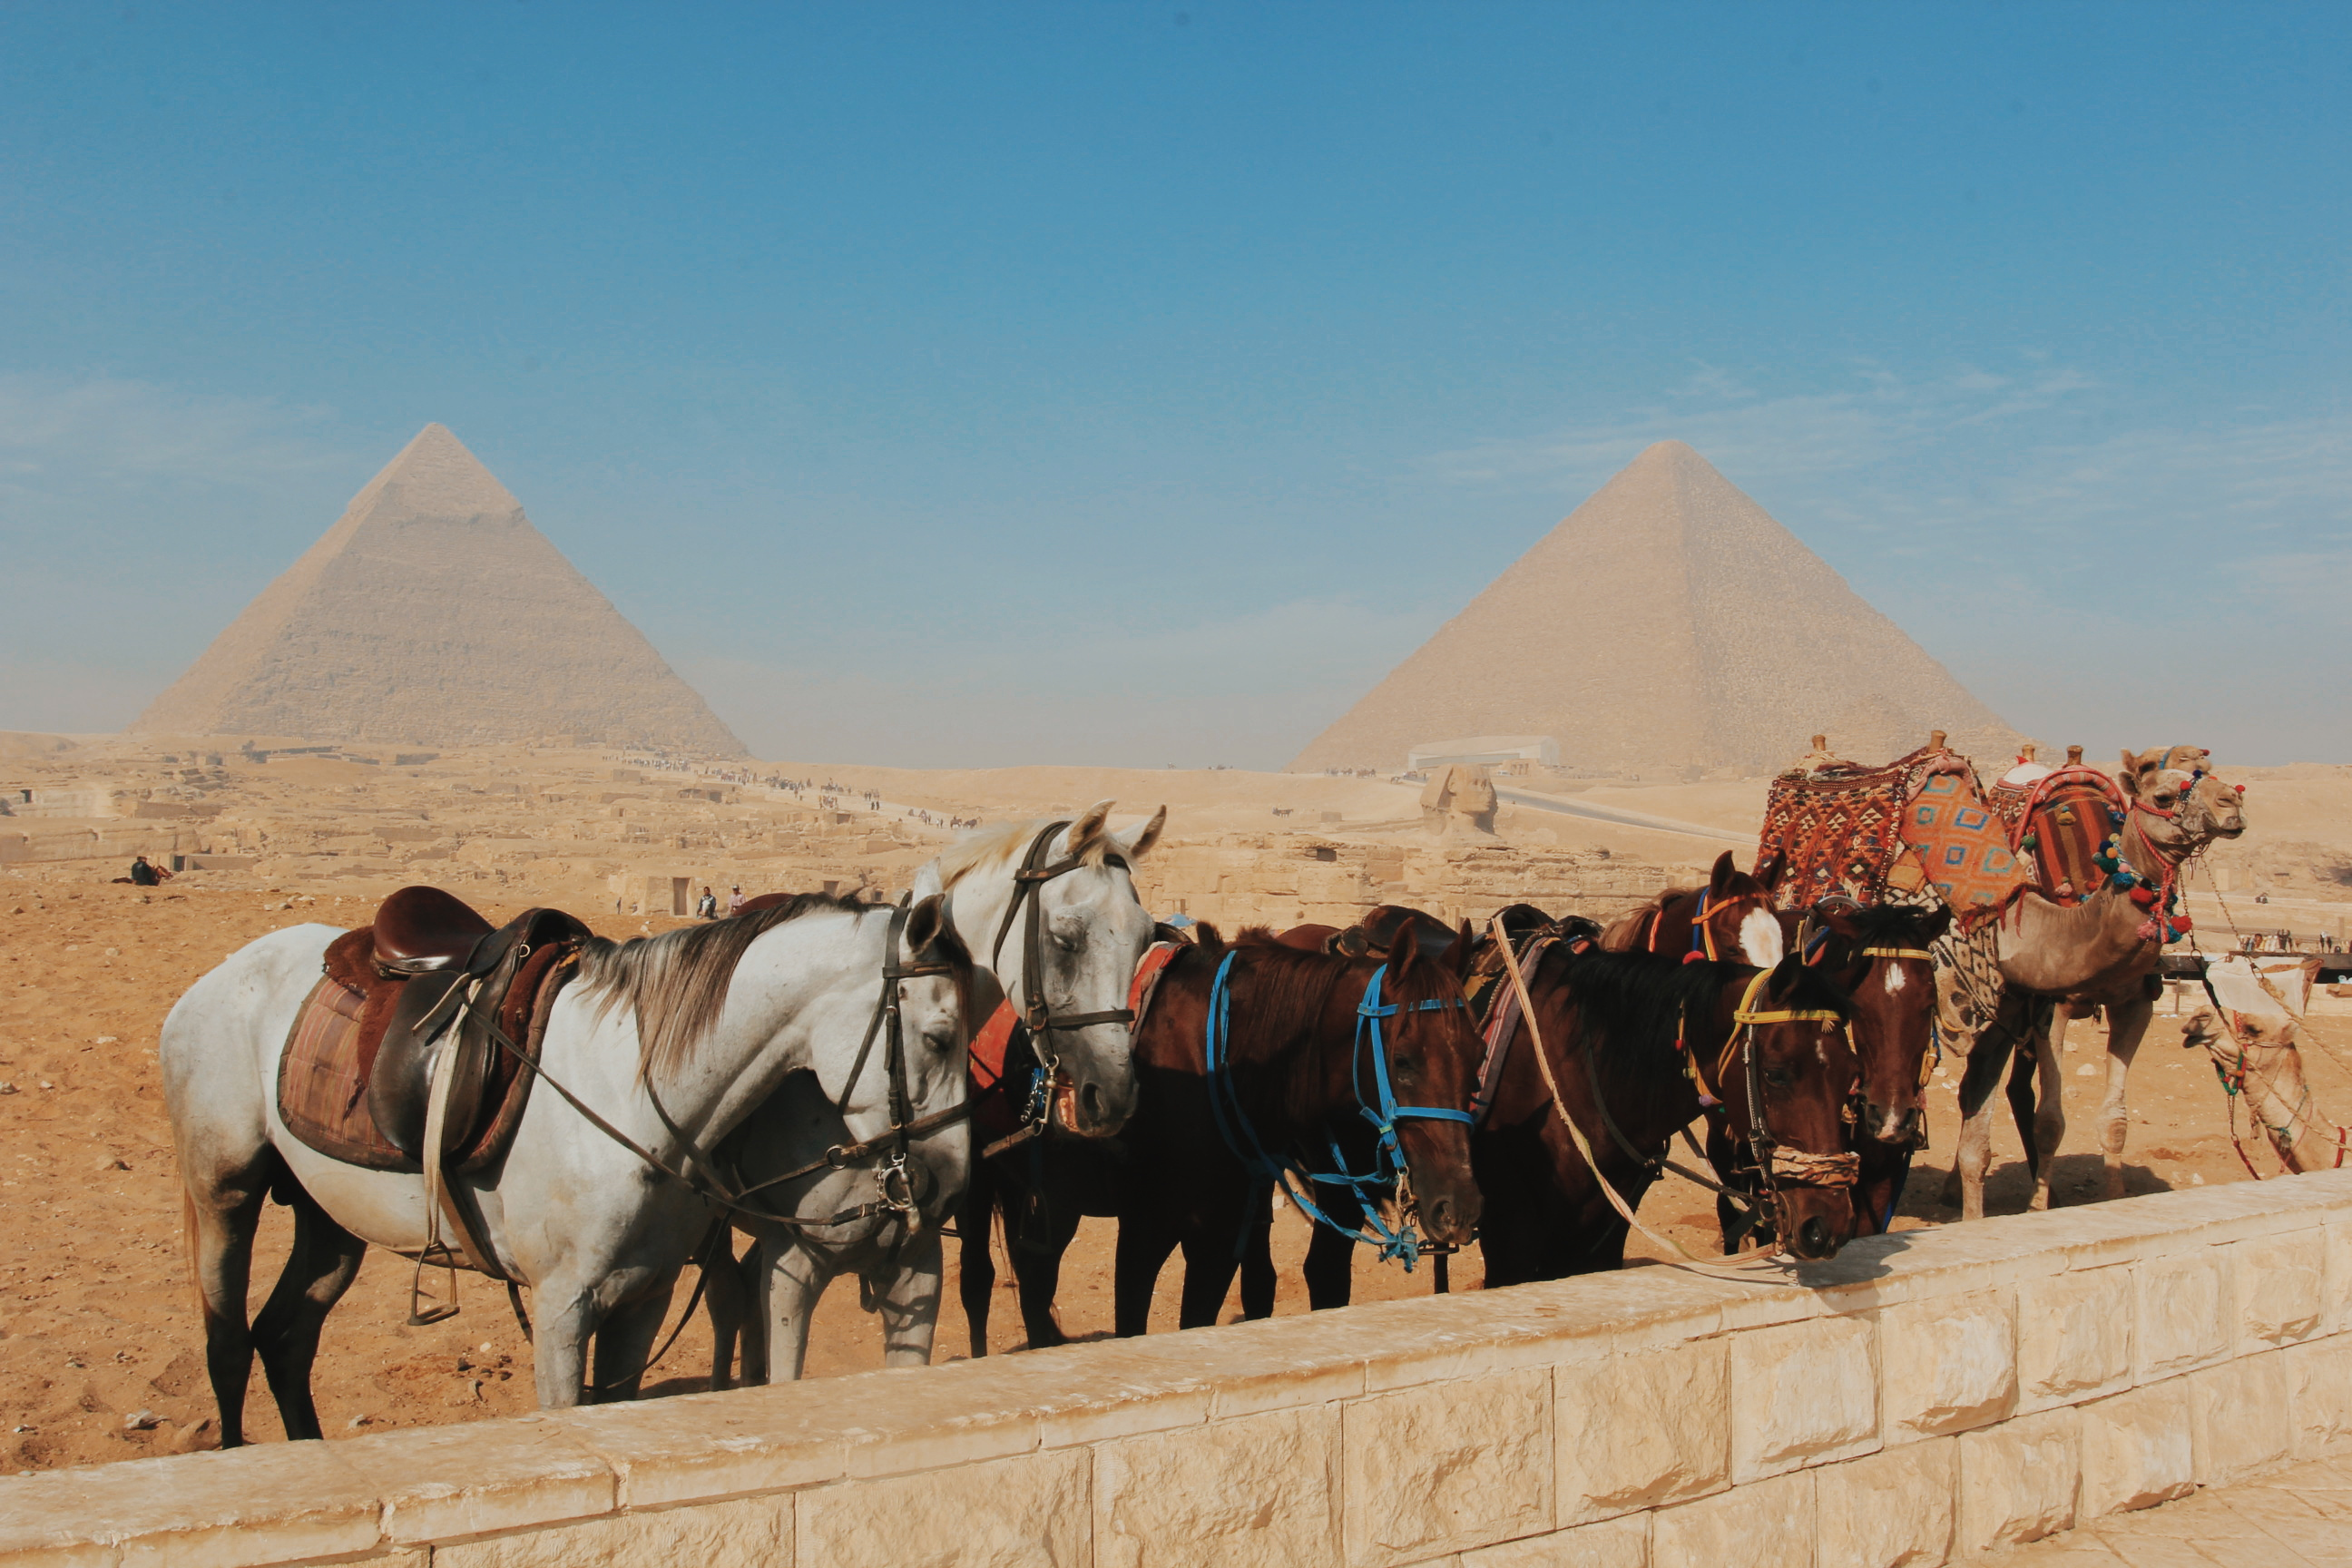 去埃及旅游,你需要特别注意的7个要点